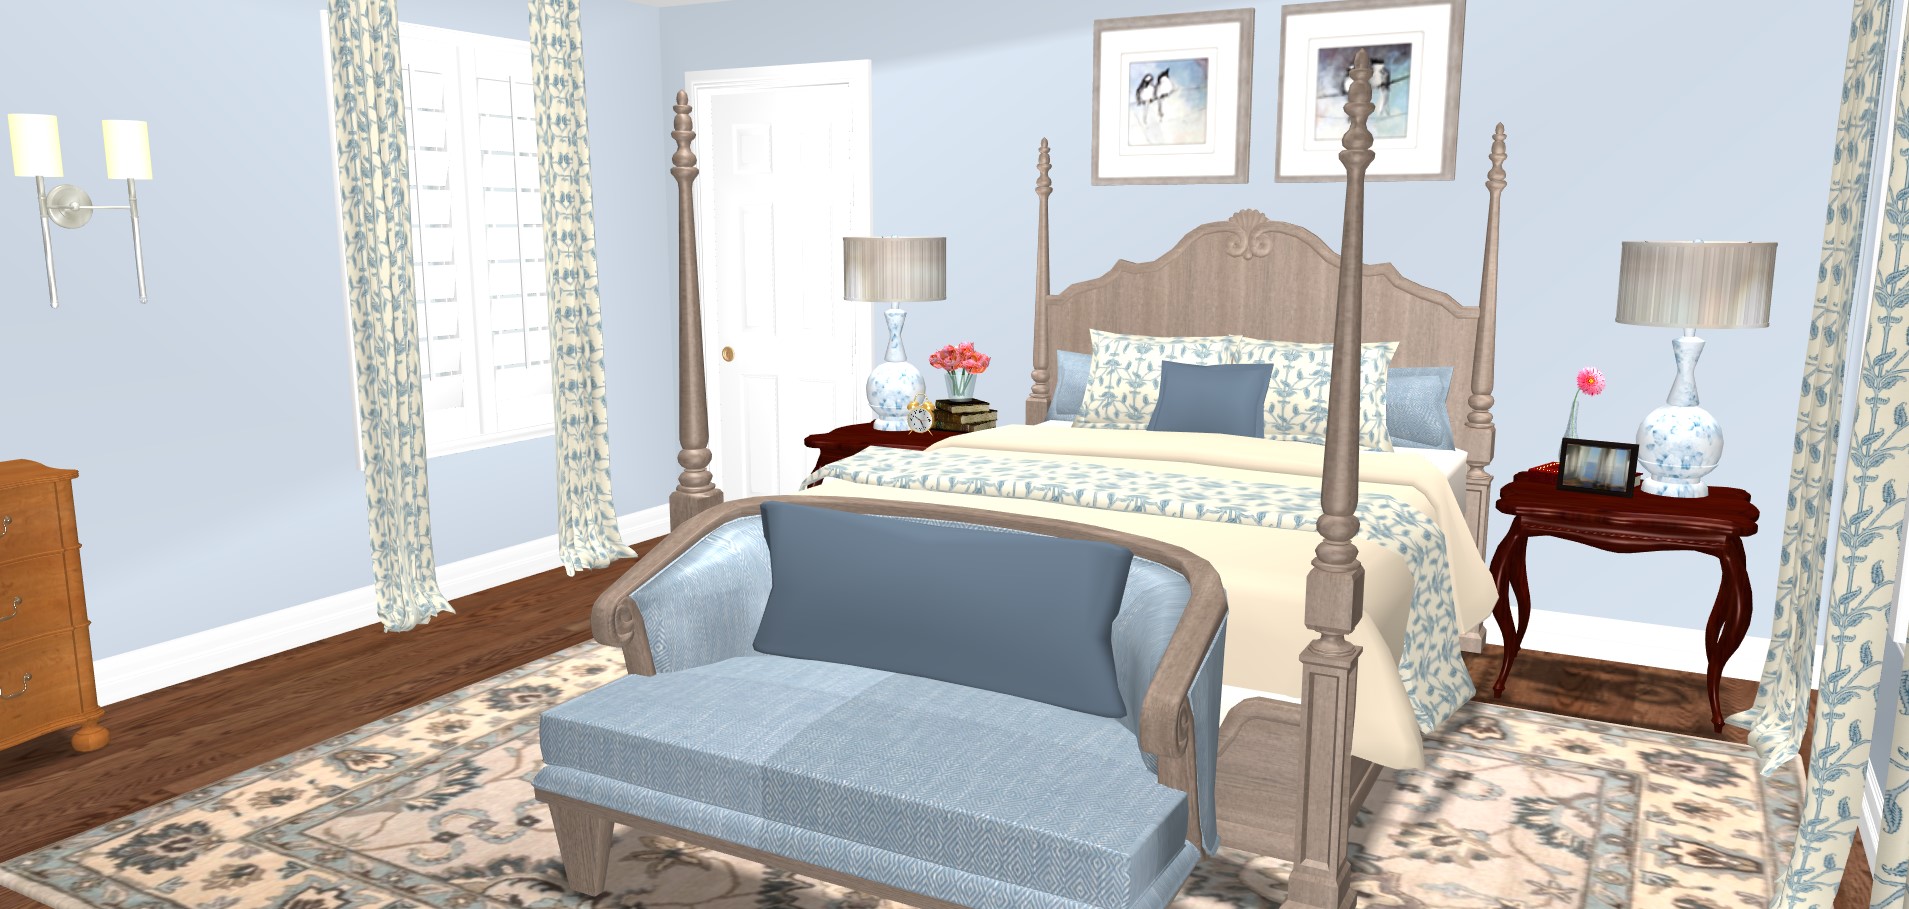 bedroom interior design 3d rendering knoxville tn